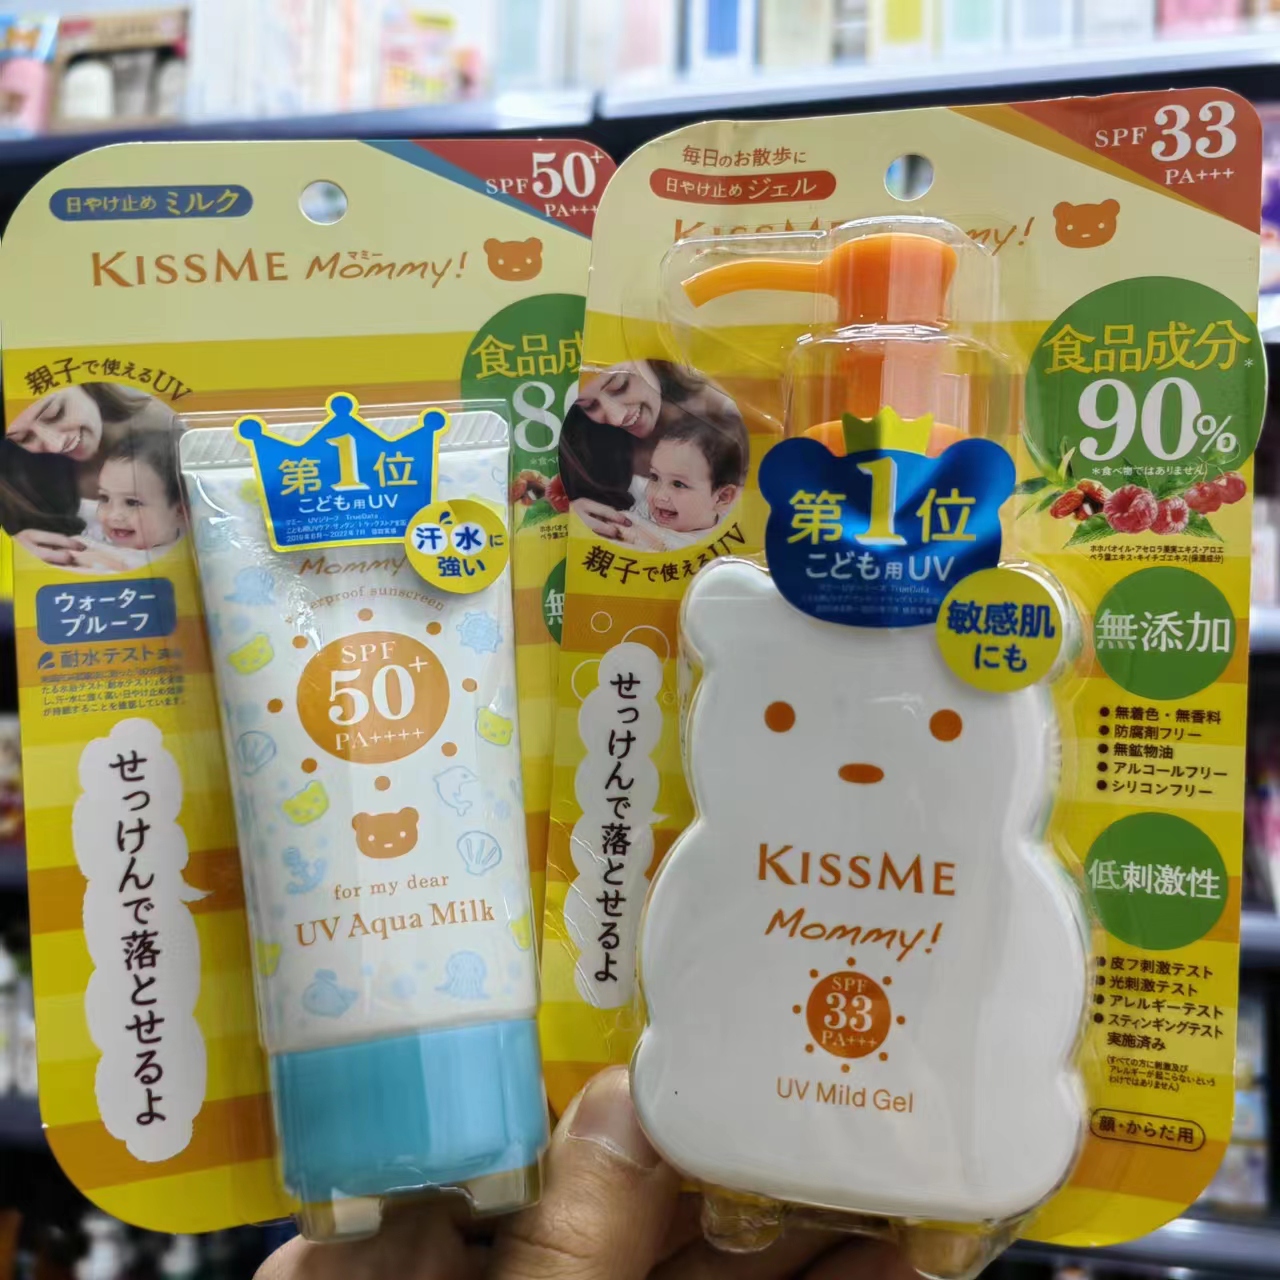 日本本土KISS ME Mommy小熊儿童防晒霜 温和无添加食品成分敏感肌